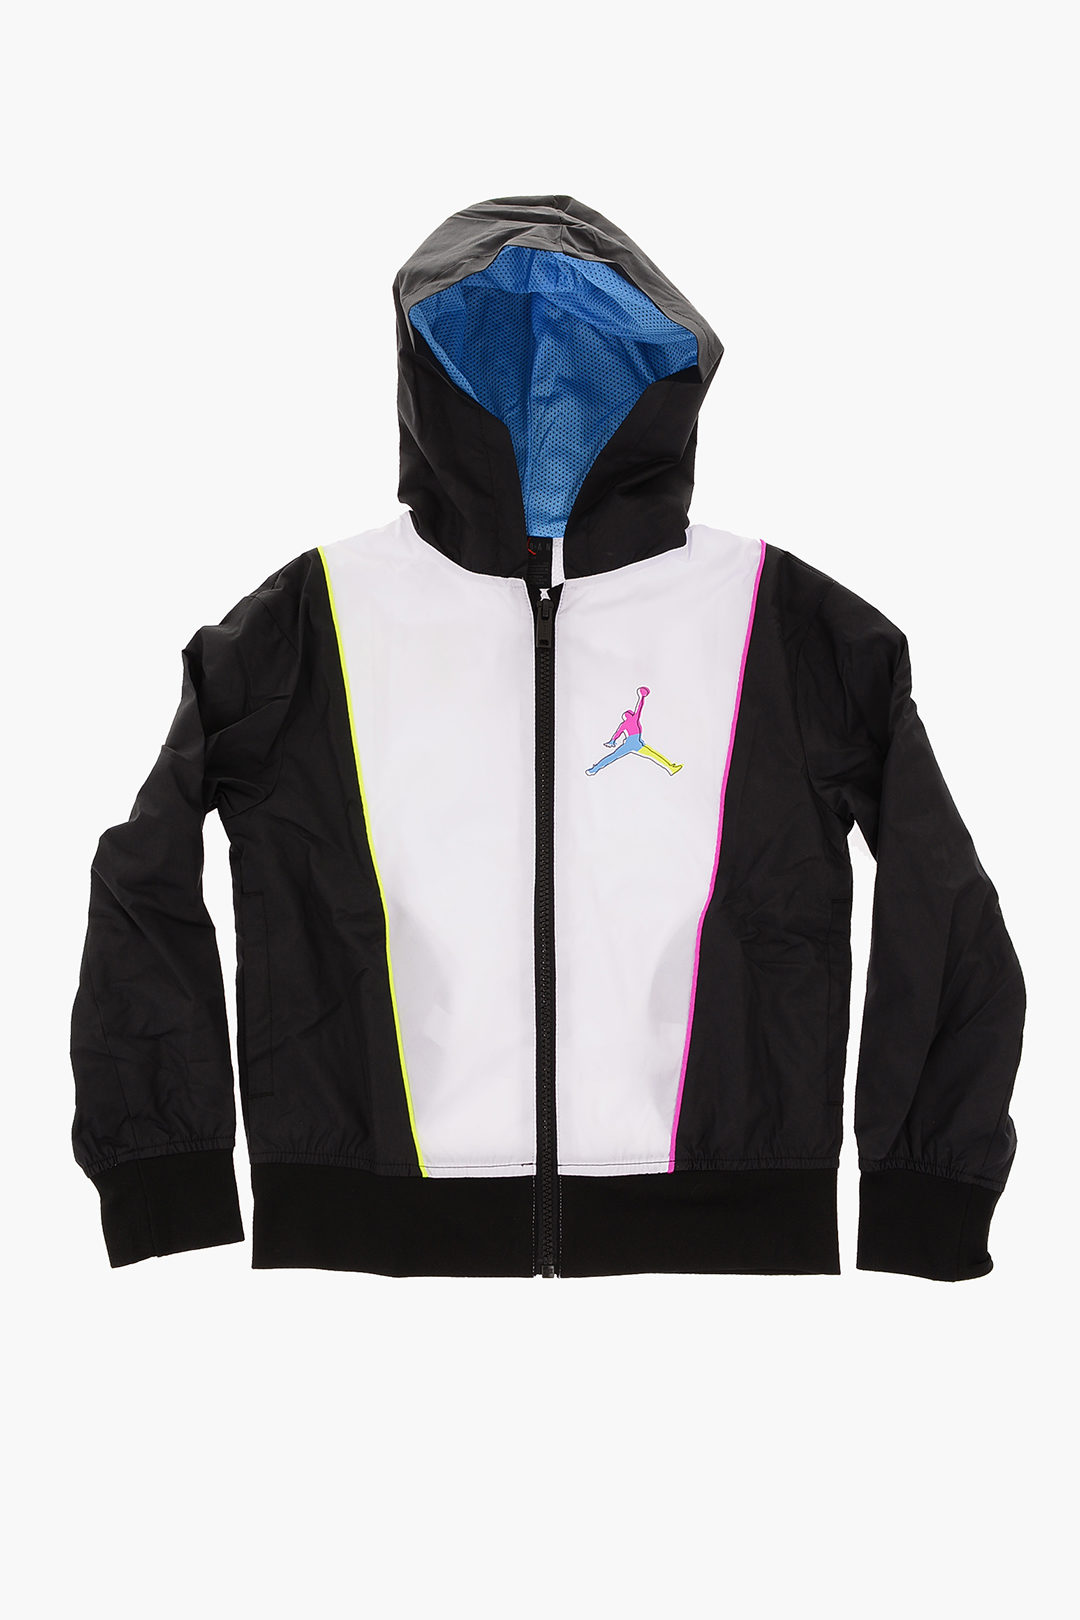 Nike Air Jordan Youth Boys Wings Hooded Fleece Lined Windbreaker Jacket  Size: L